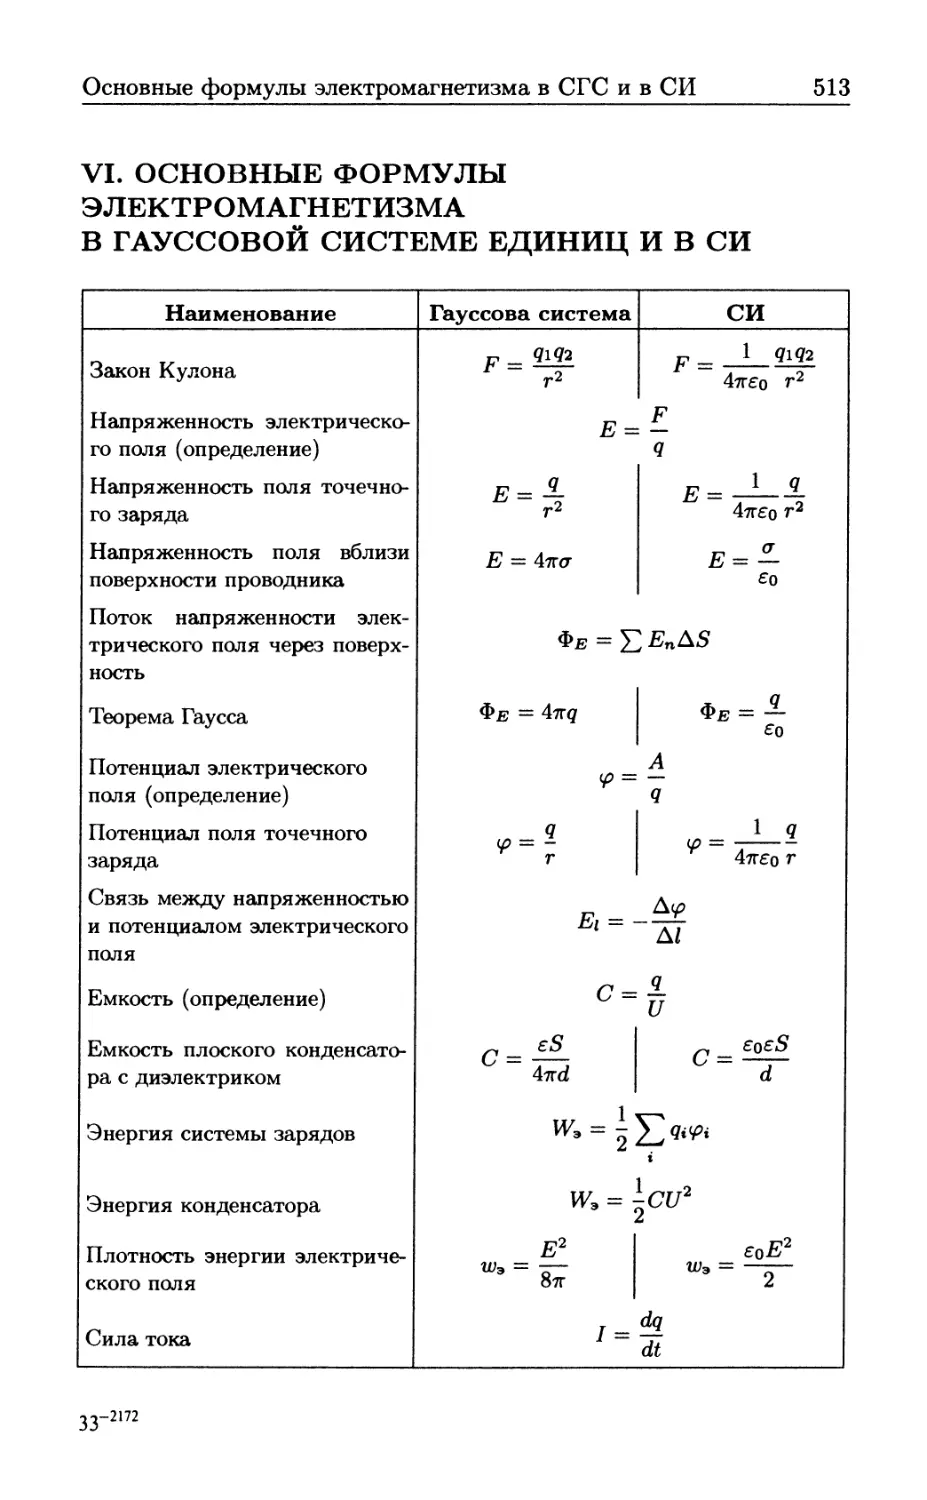 VI Основные формулы электромагнетизма в гауссовой системе единиц и в СИ